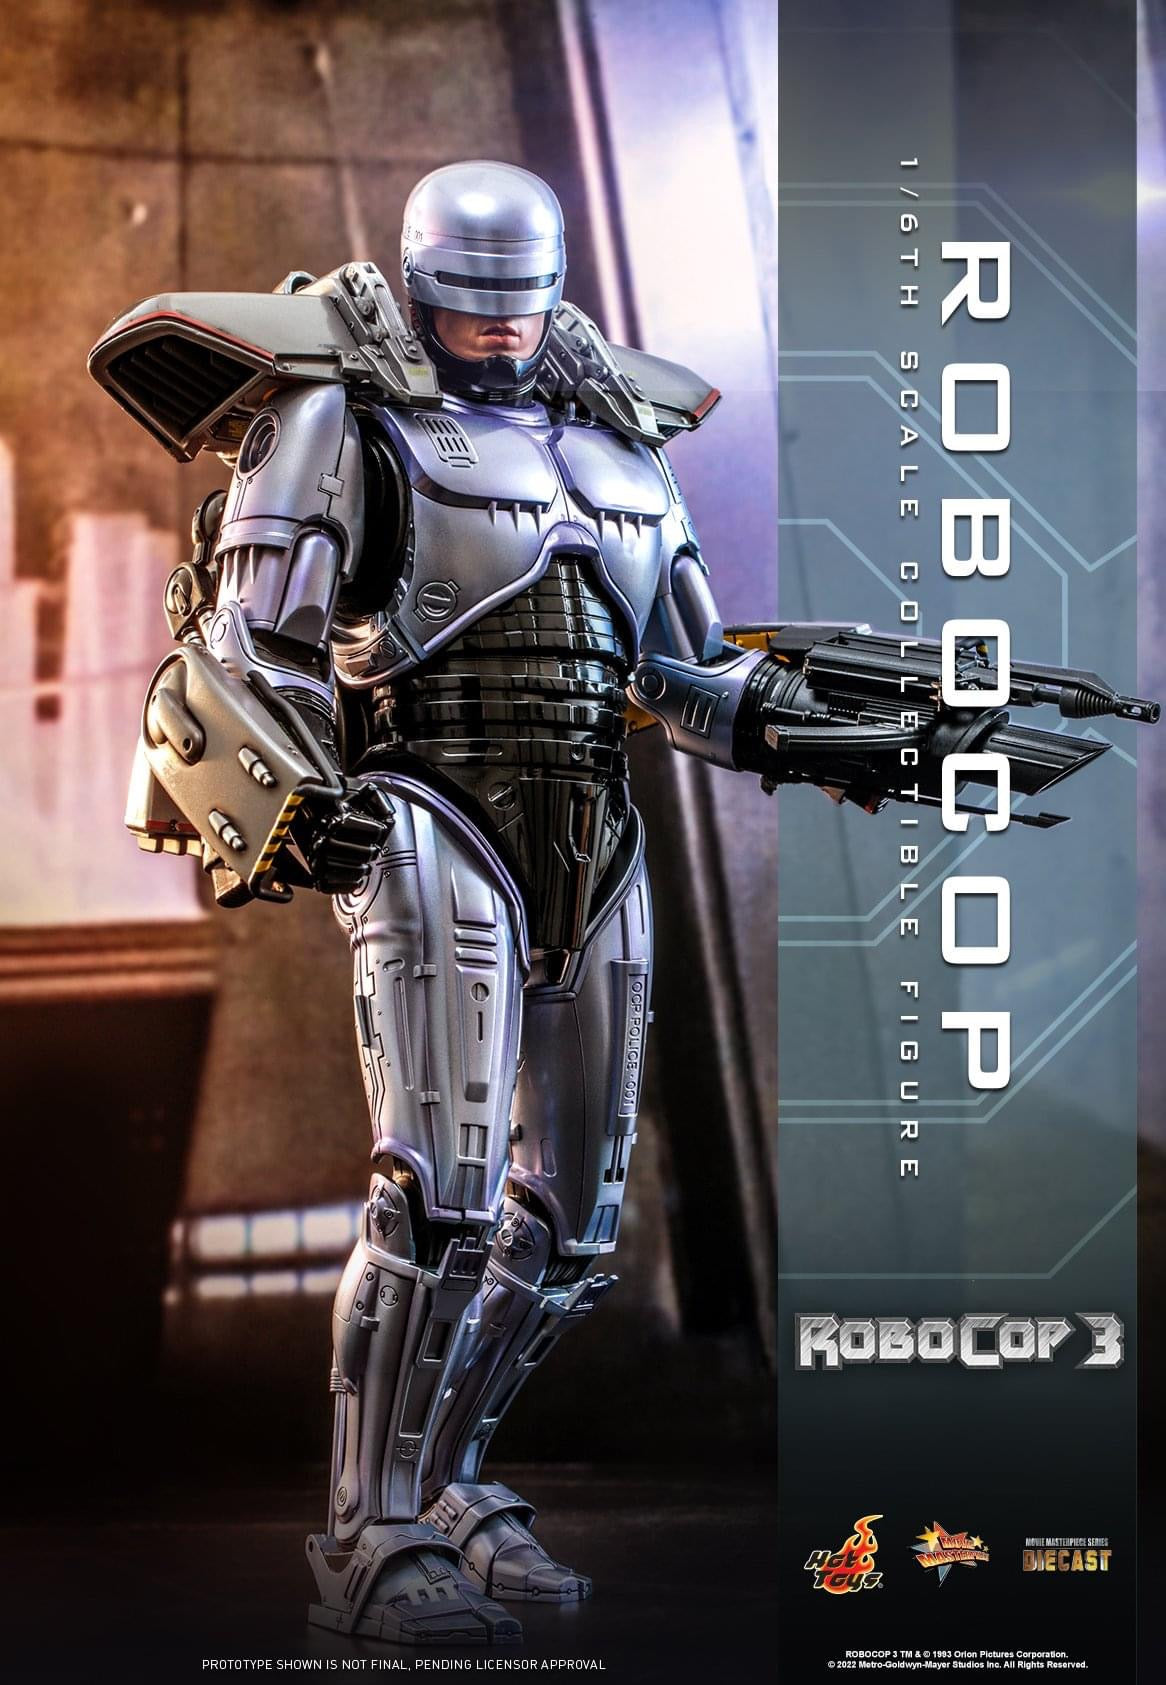 Preventa Figura RoboCop 3 marca Hot Toys MMS669D49 escala 1/6